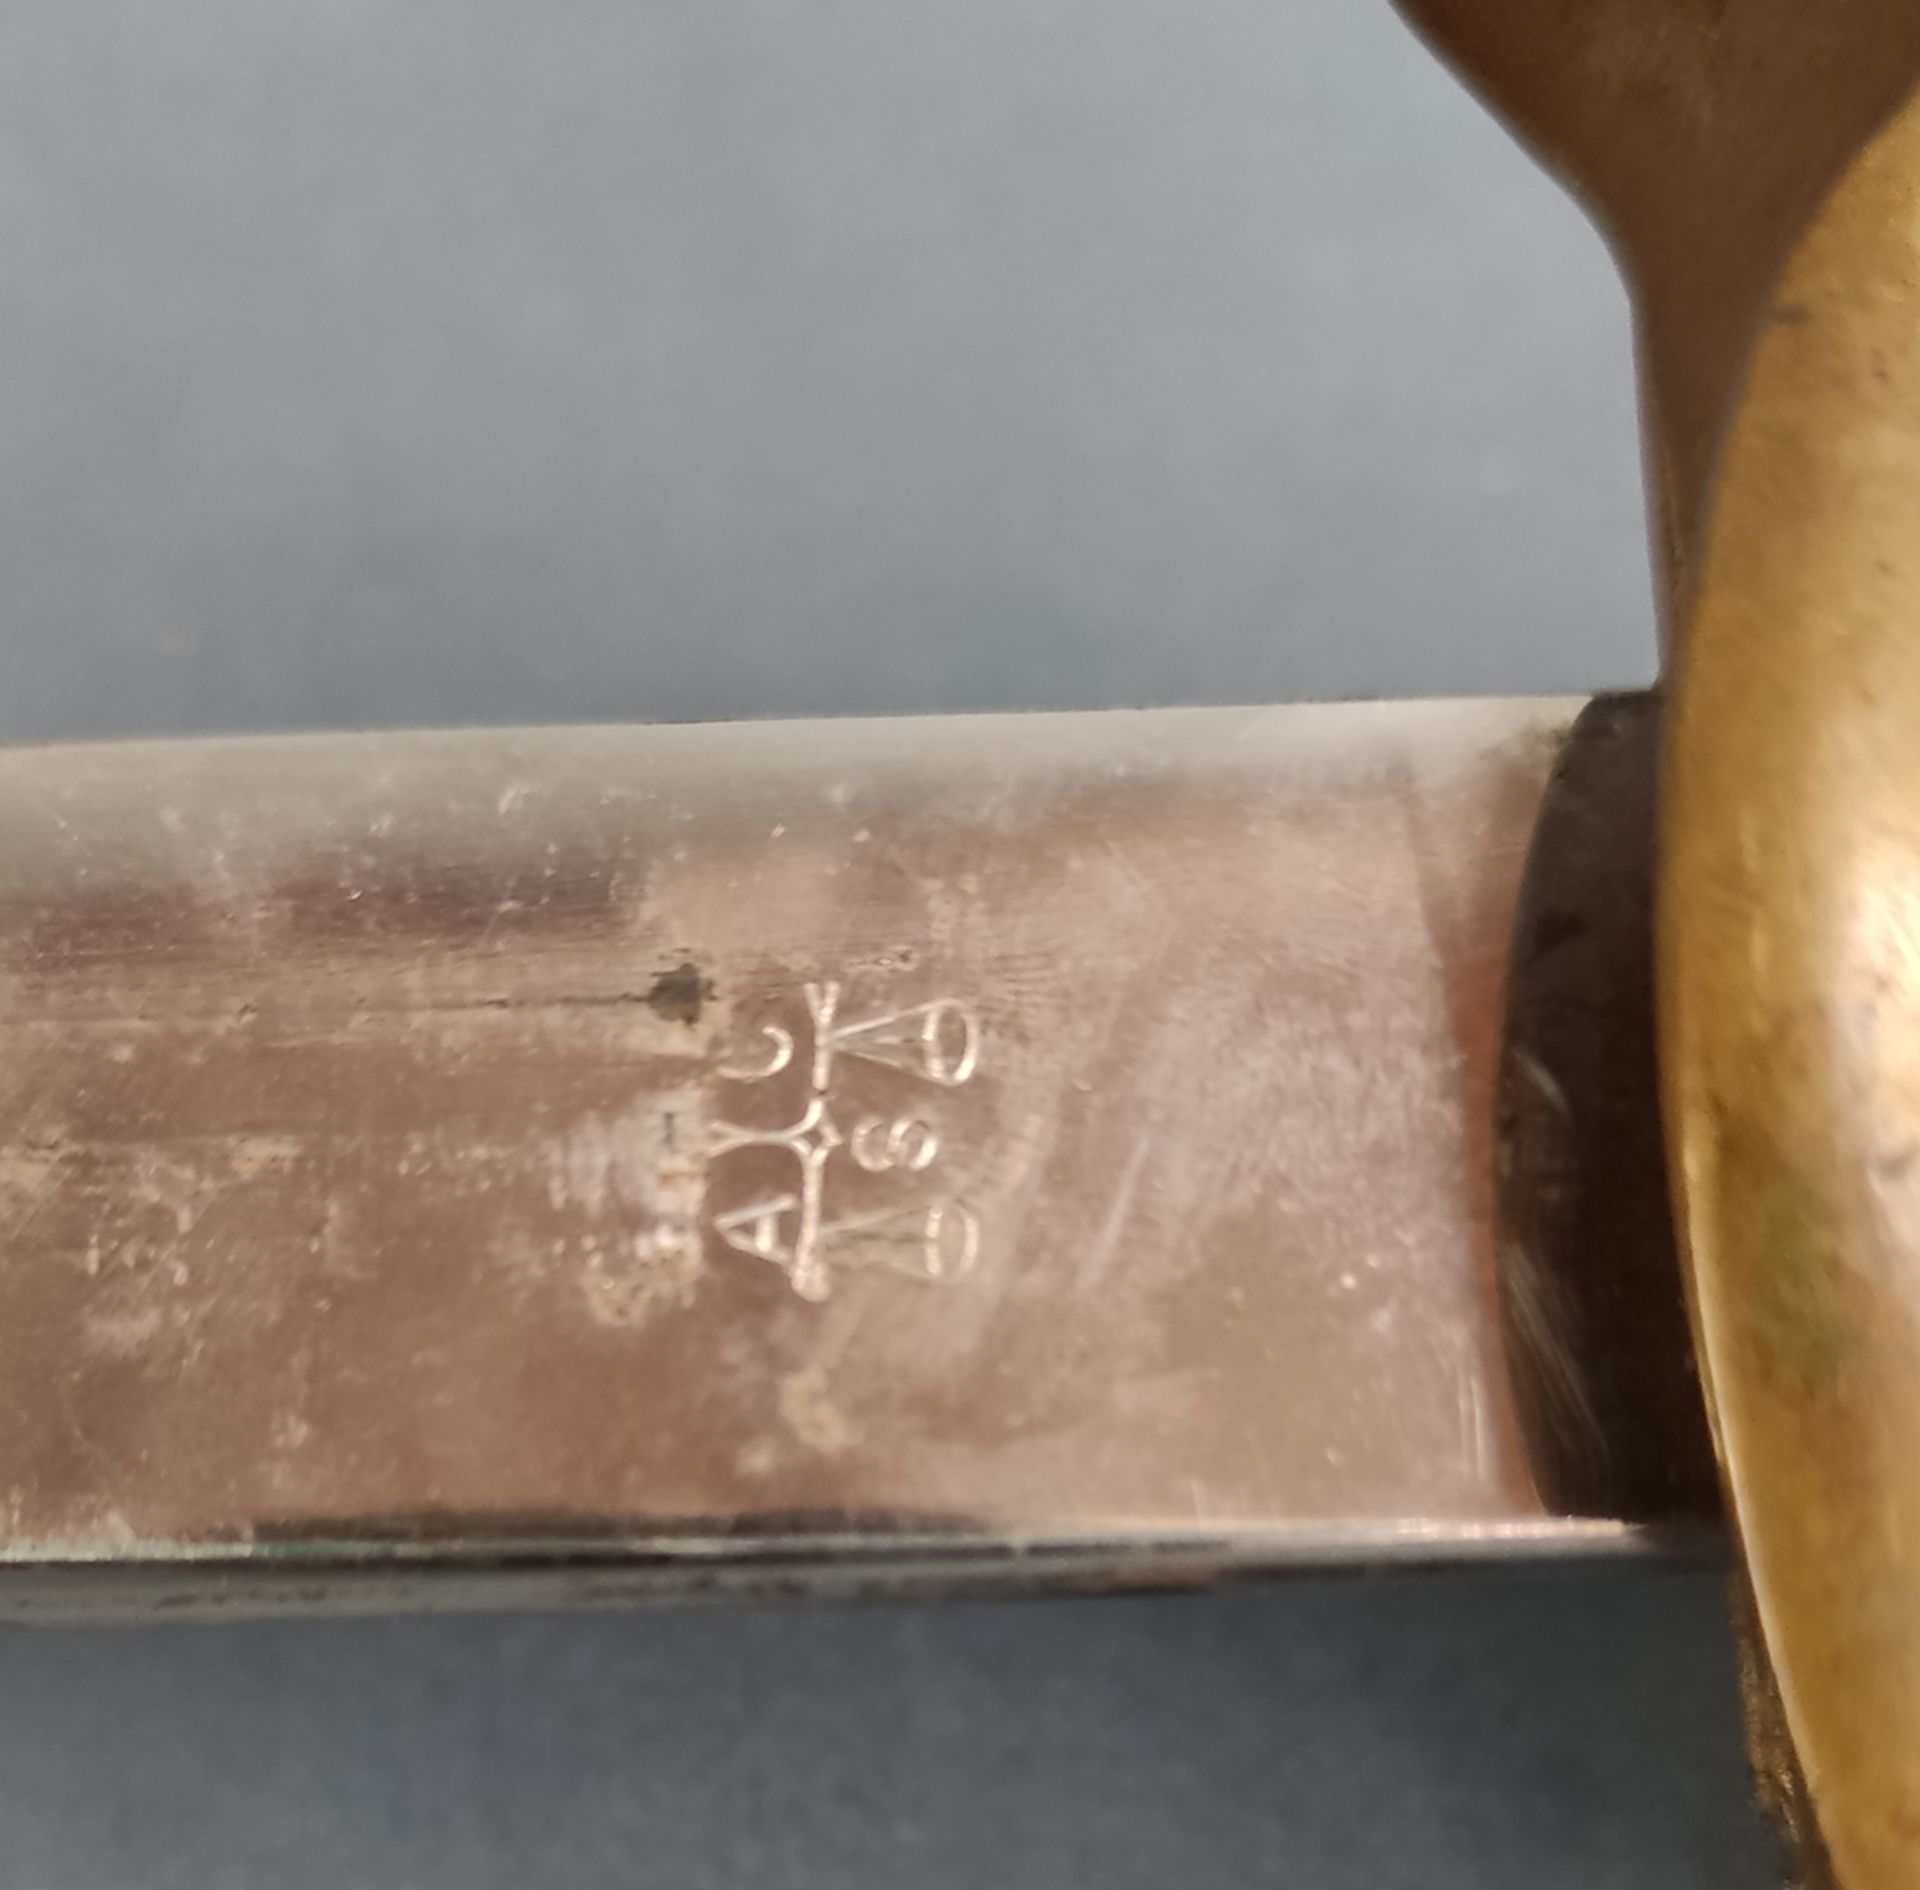 Infanterie Offiziers Degen, (IOD), zweifach gekehlte Klinge, an der Wurzel Herstellersignet "A C S" - Bild 4 aus 4